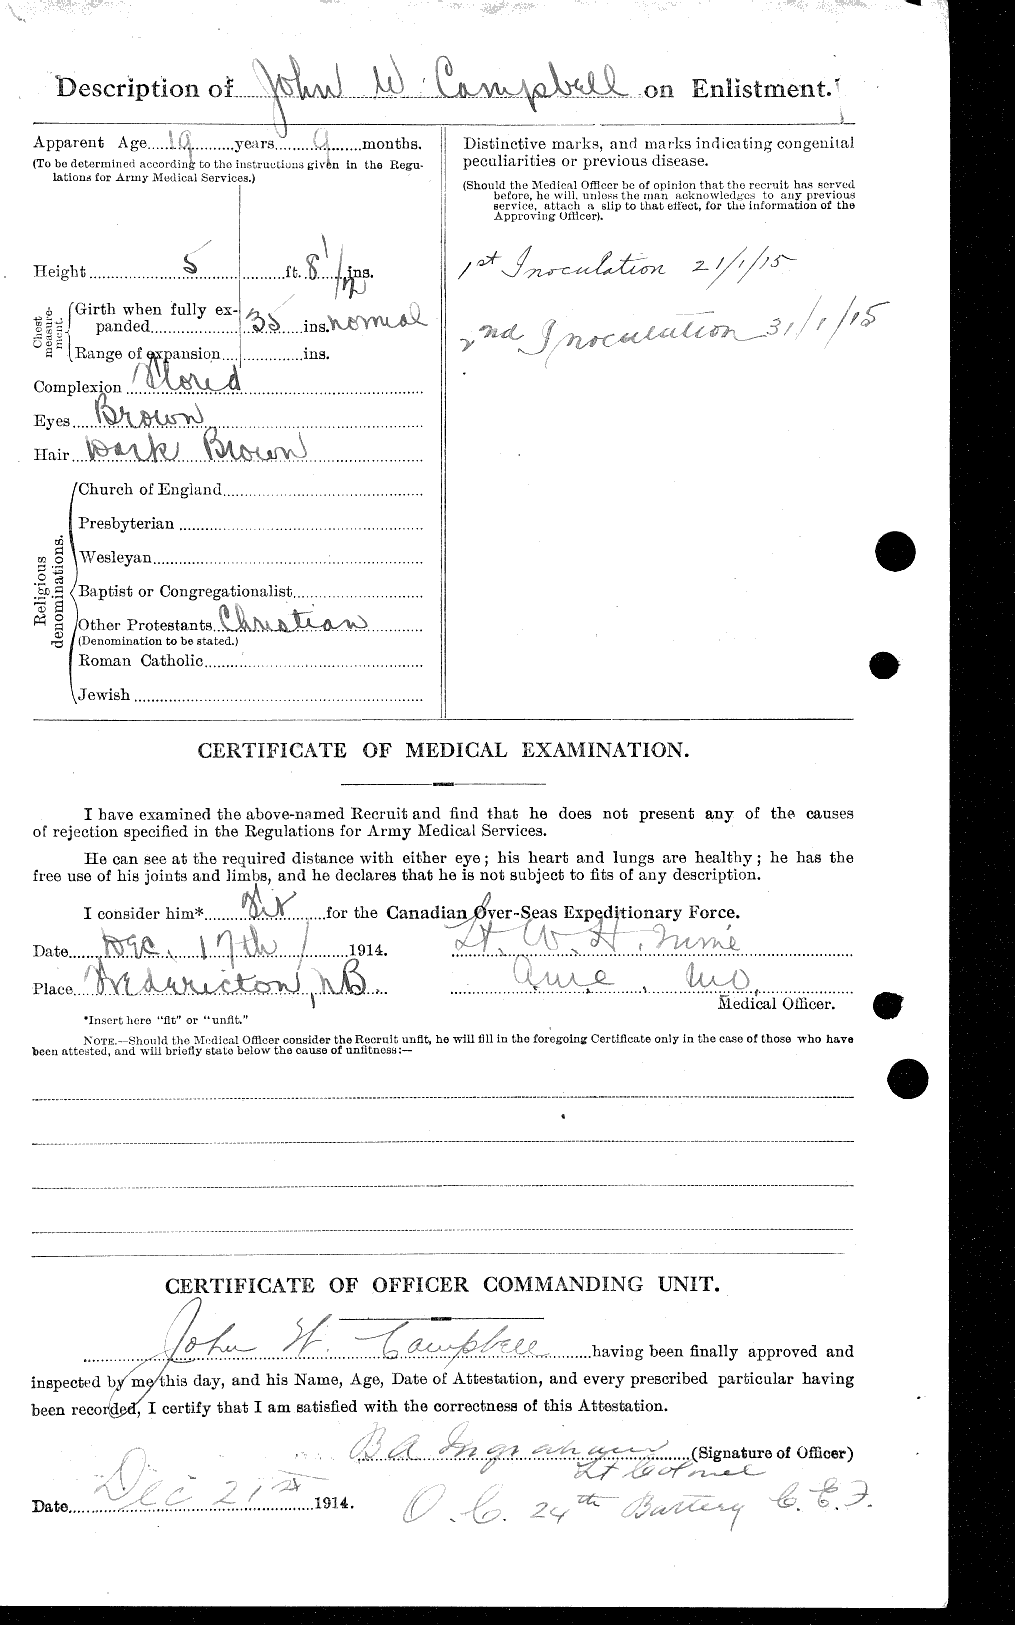 Dossiers du Personnel de la Première Guerre mondiale - CEC 003803b